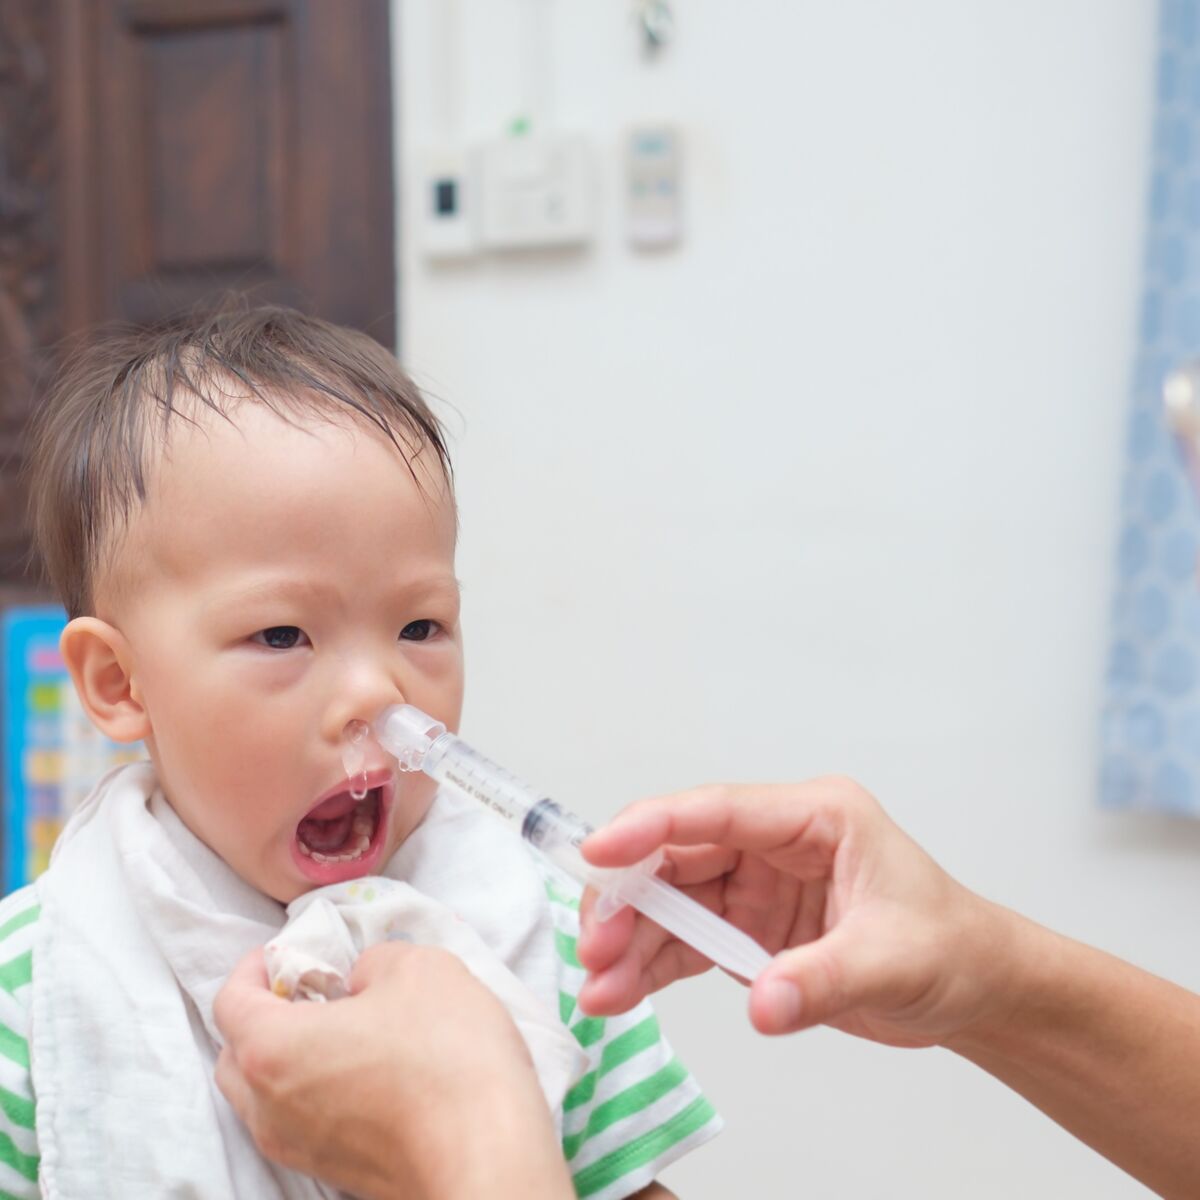 Seringue nasale pour bébé, seringue nasale pour bébé avec